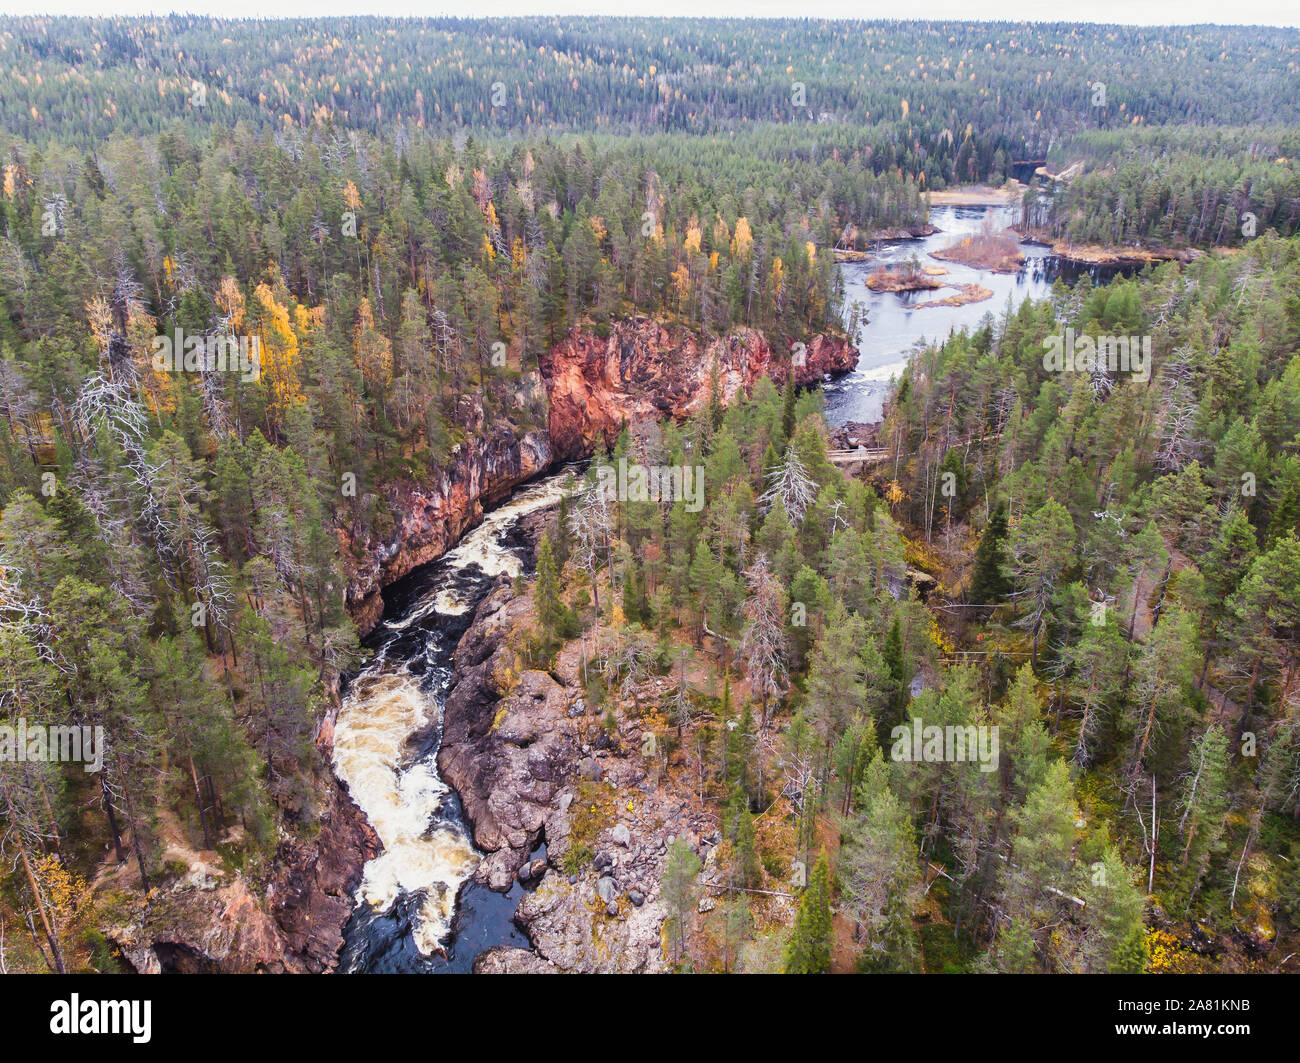 Compte tenu de l'automne paysage du Parc National d'Oulanka, au cours de la randonnée, un parc national de Finlande dans l'Ostrobotnie du Nord et en Laponie Finlande Banque D'Images